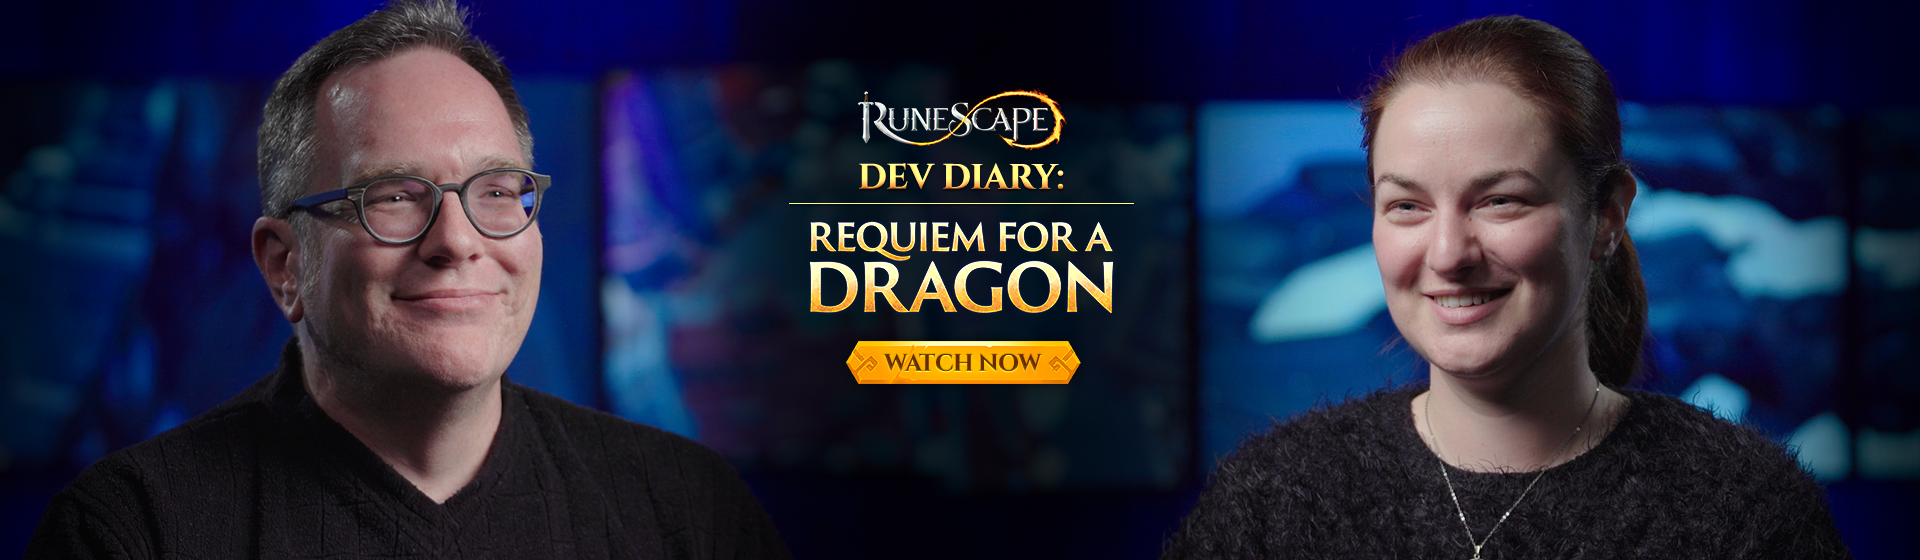 Dev Diary: Requiem for a Dragon